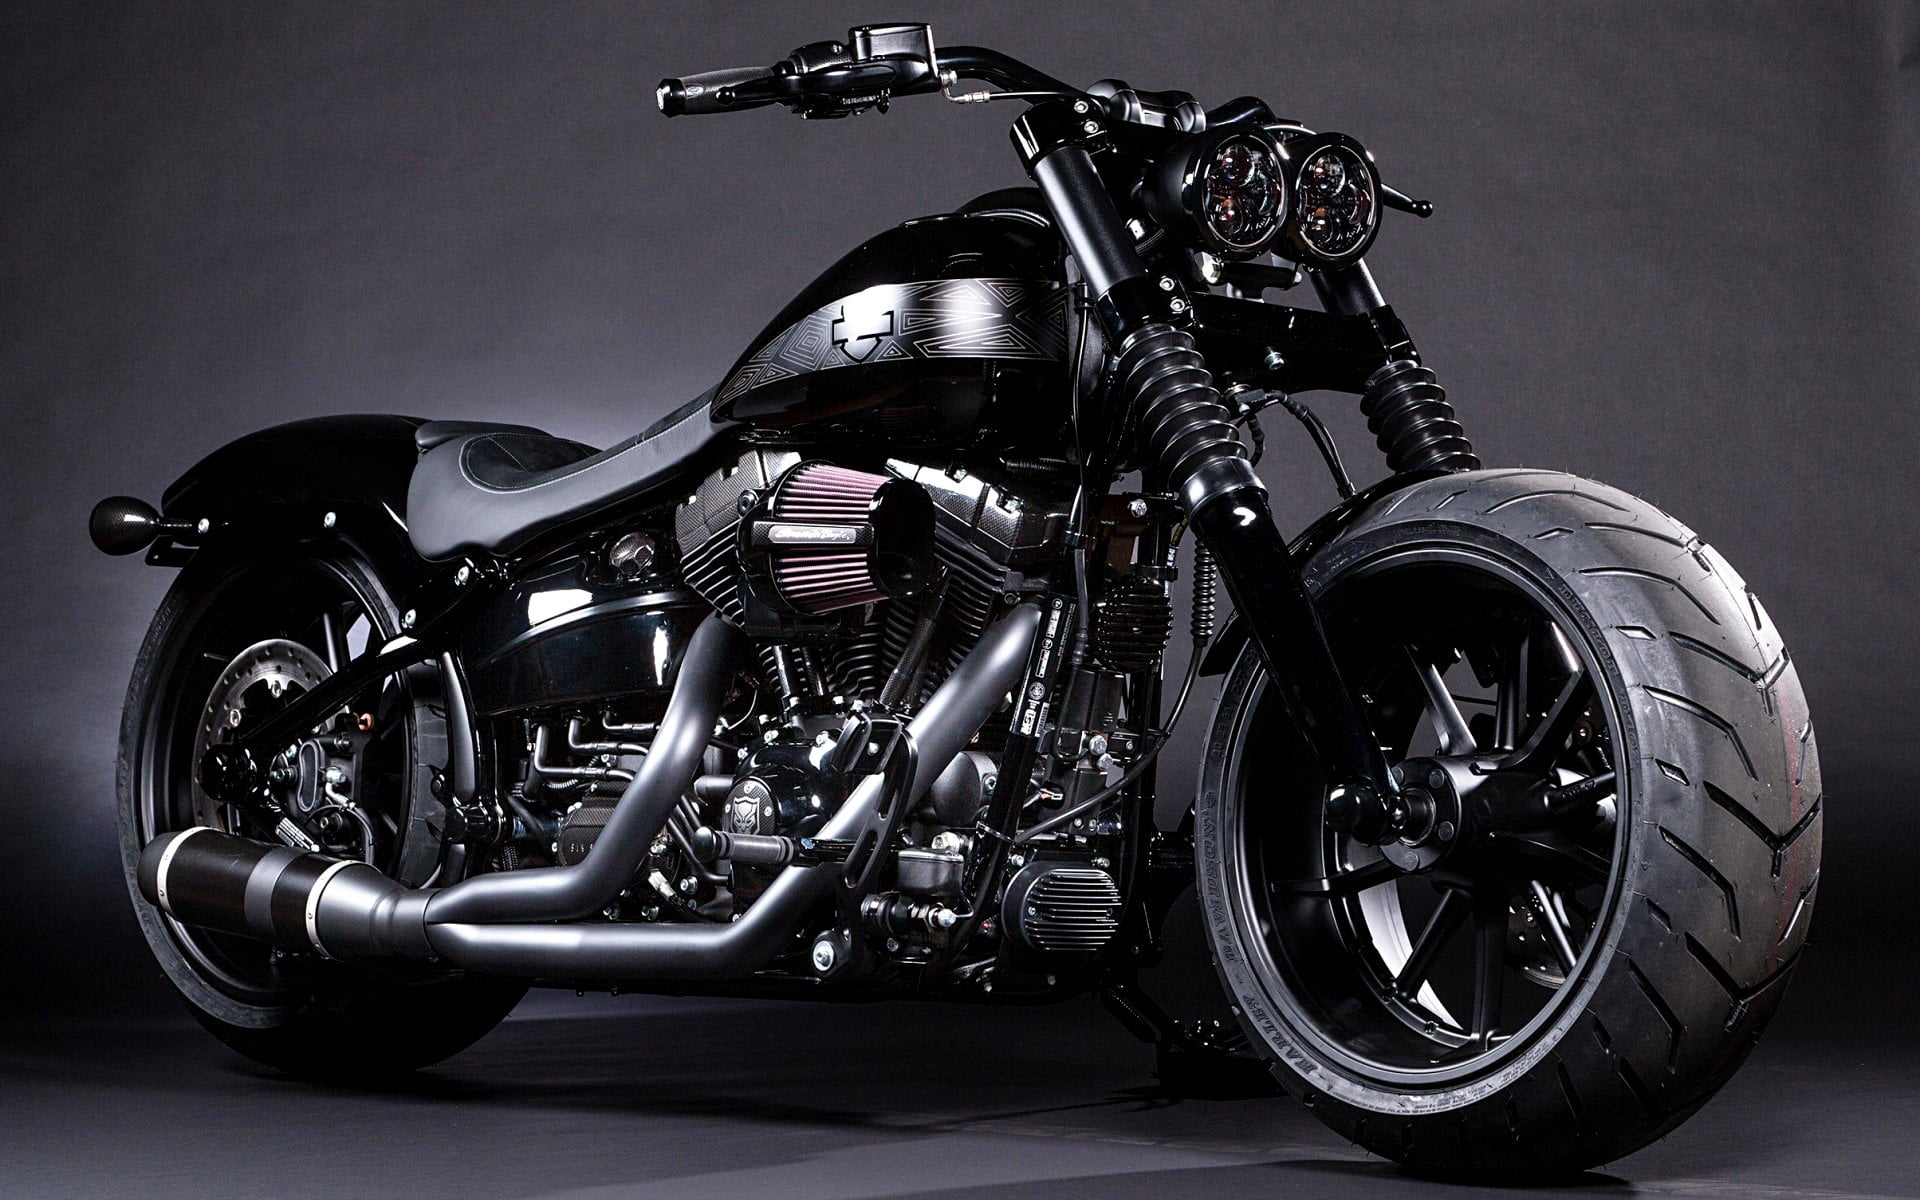 Black Panther Breakout Softail, black Harley-Davidson cruiser motorcycle